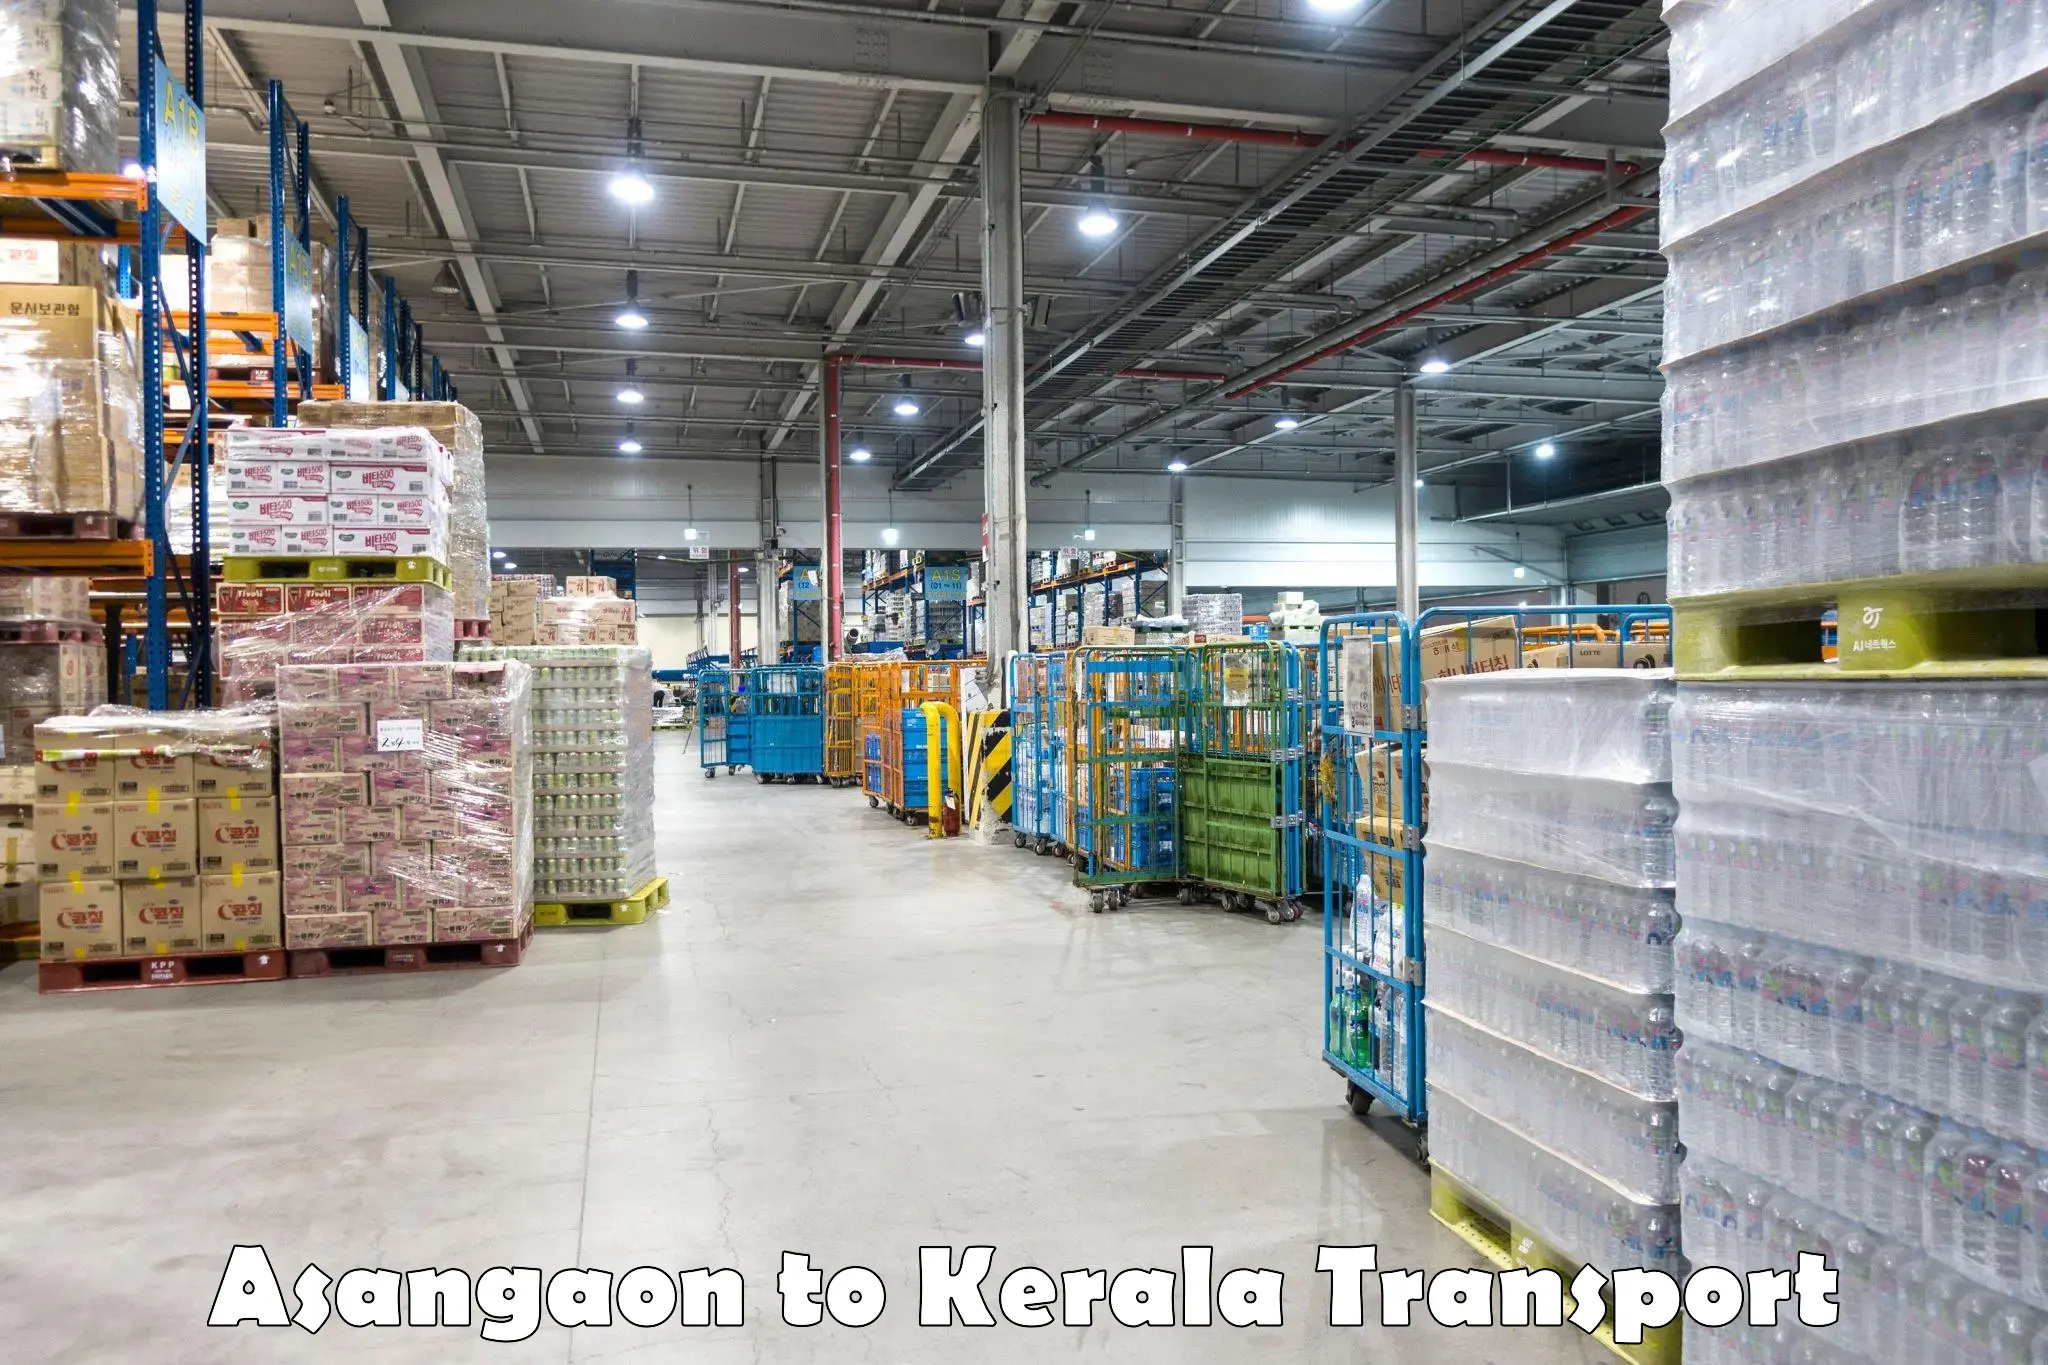 Cargo transport services Asangaon to Kakkur